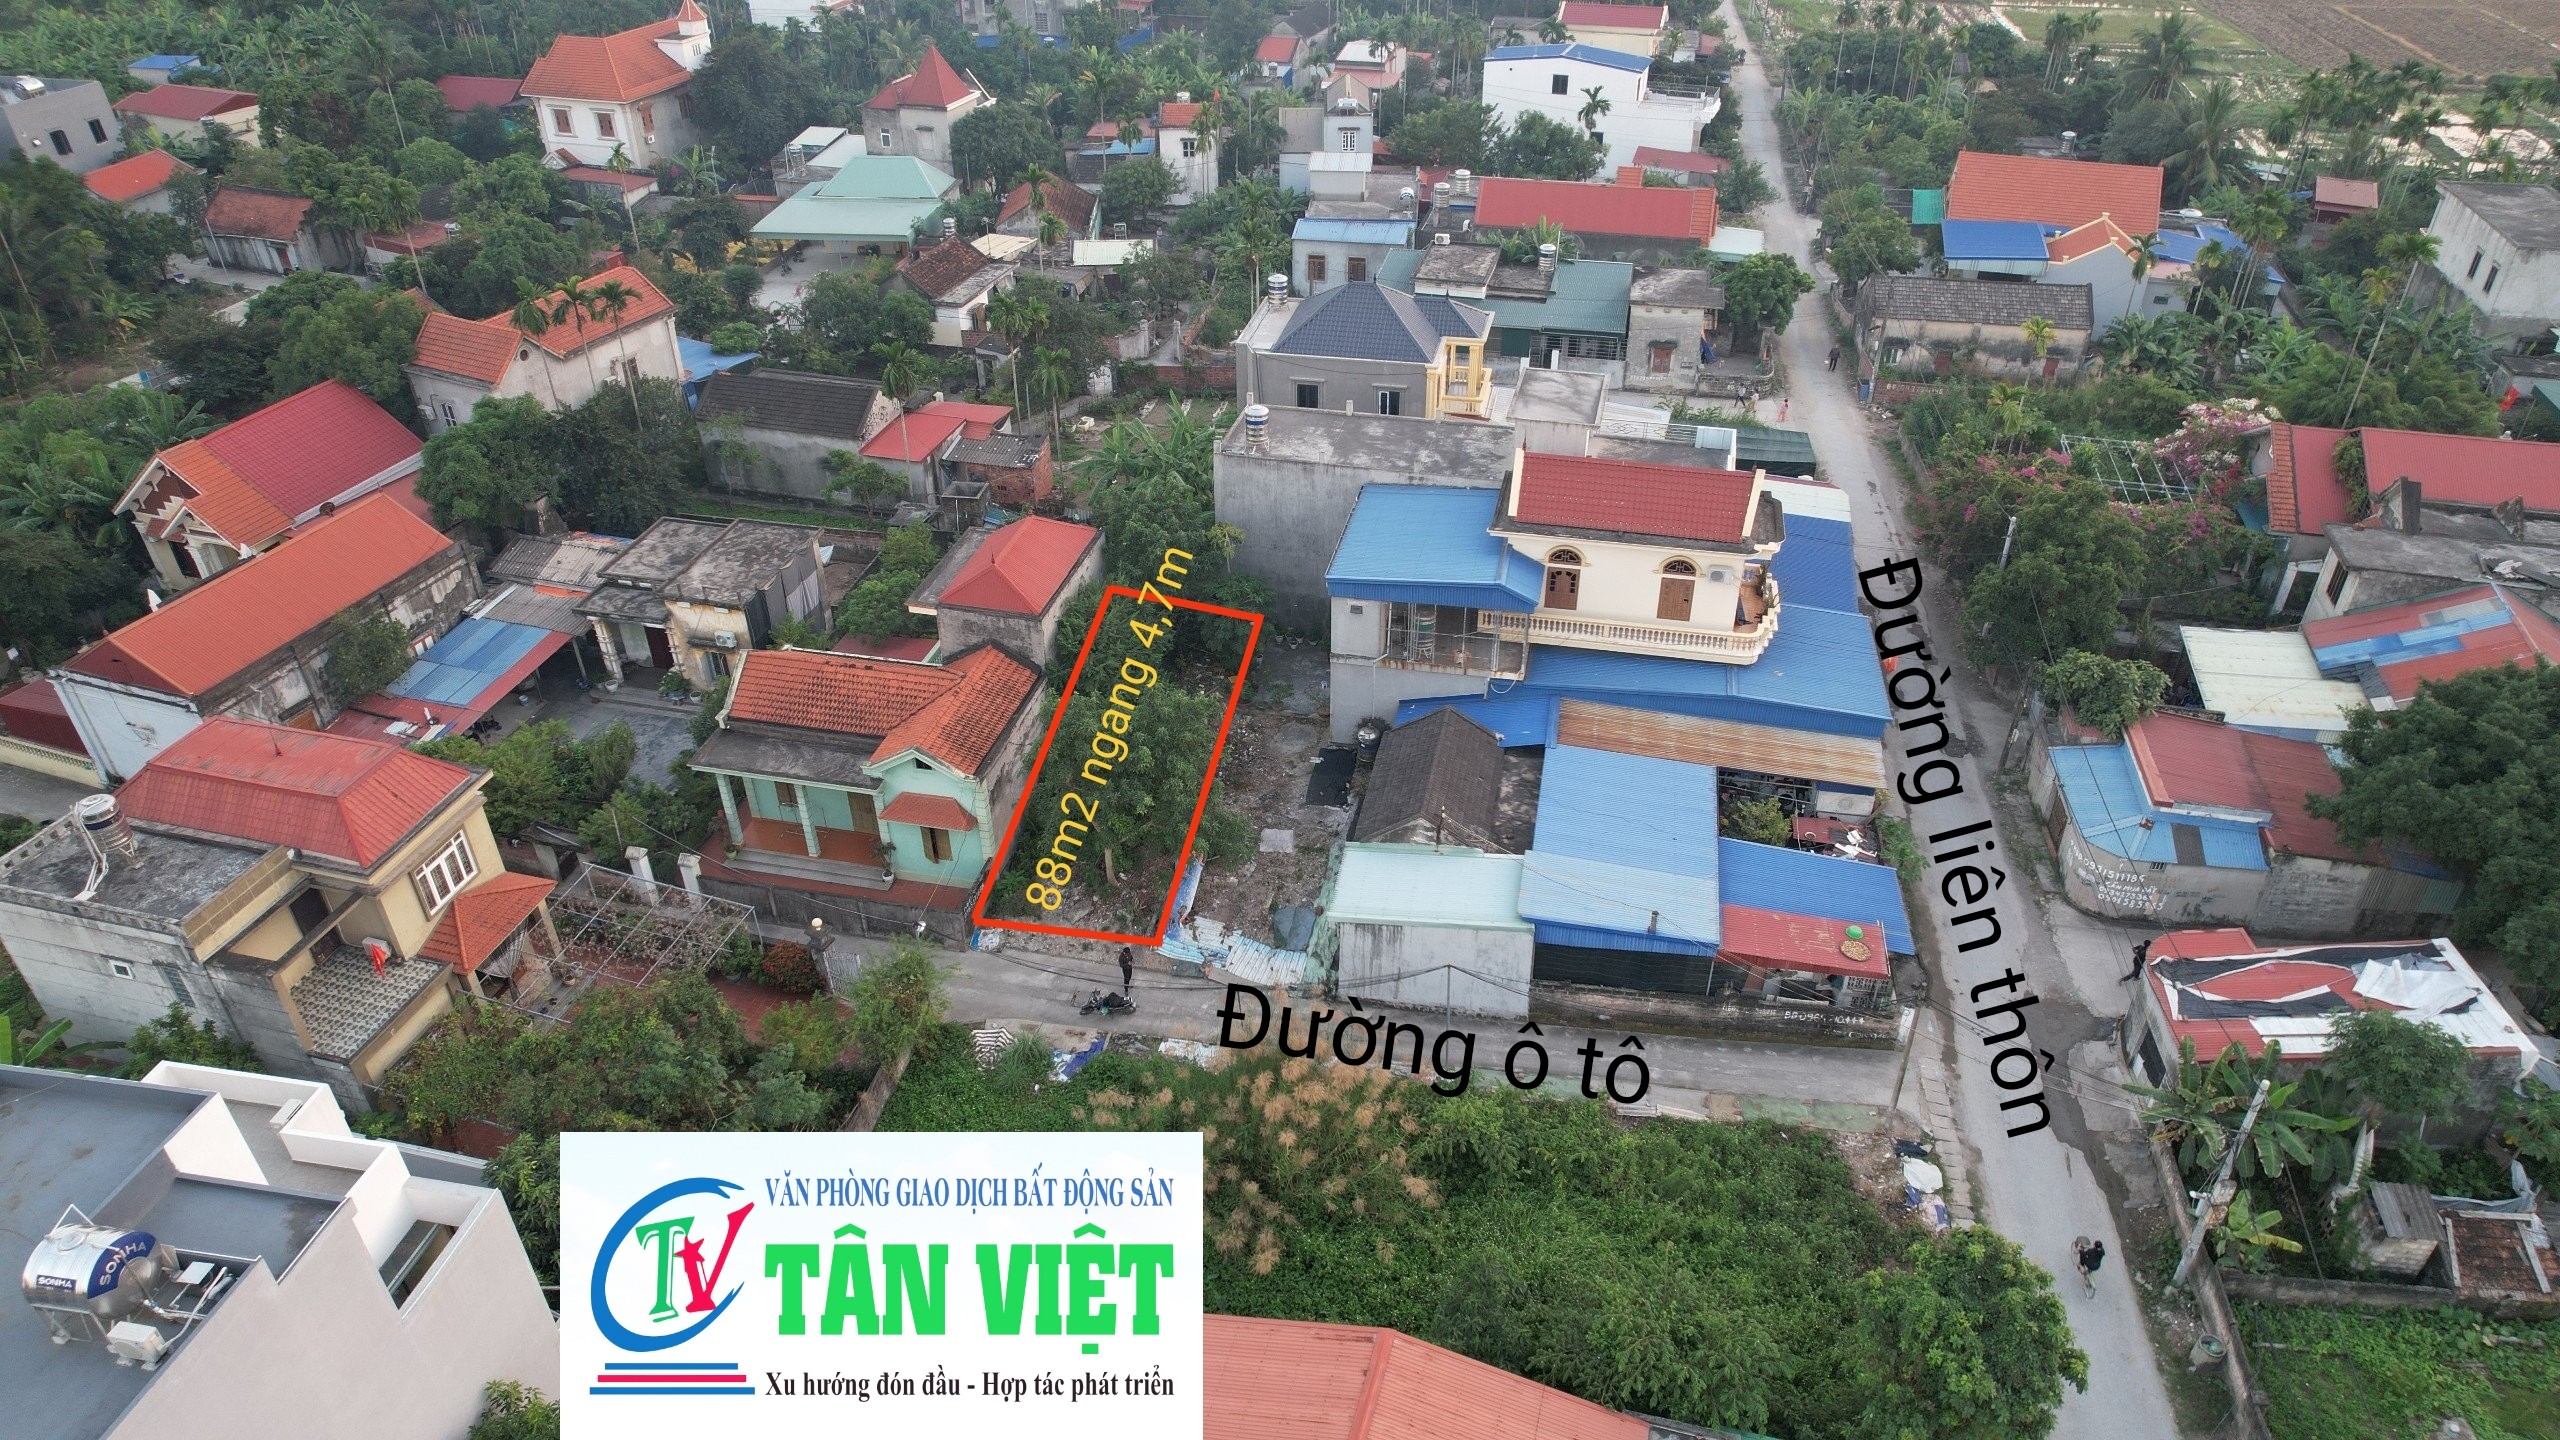 Cần bán đất gần KCN Vsip tại Hoa Động, Thủy Nguyên, Hải Phòng